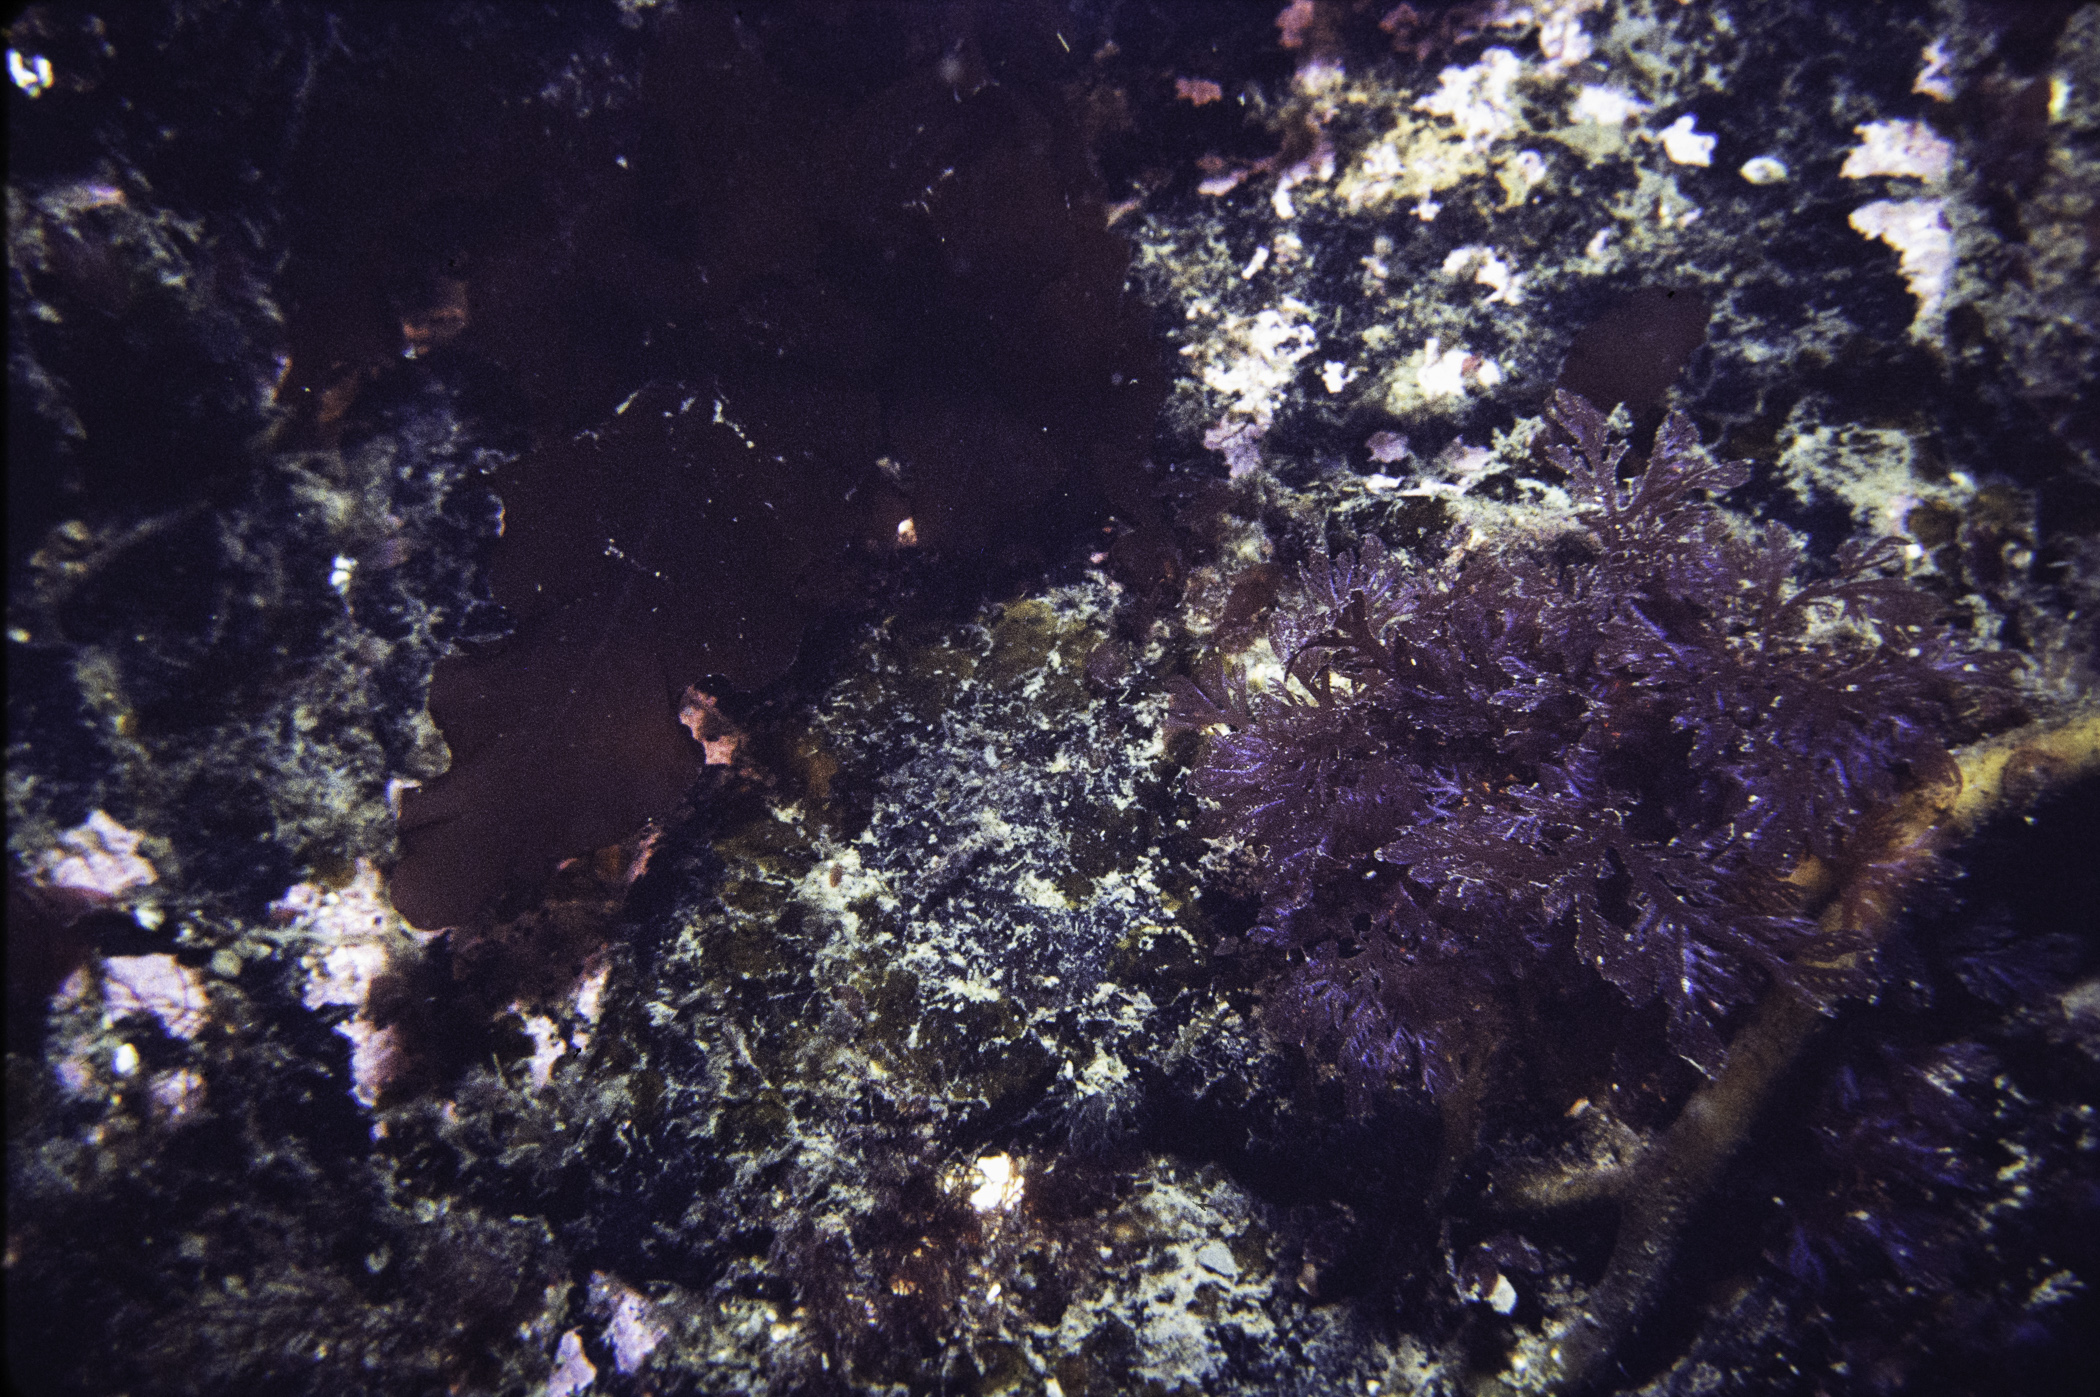 Delesseria sanguinea, Plocamium cartilagineum. Site: SE of St.John's Point. 